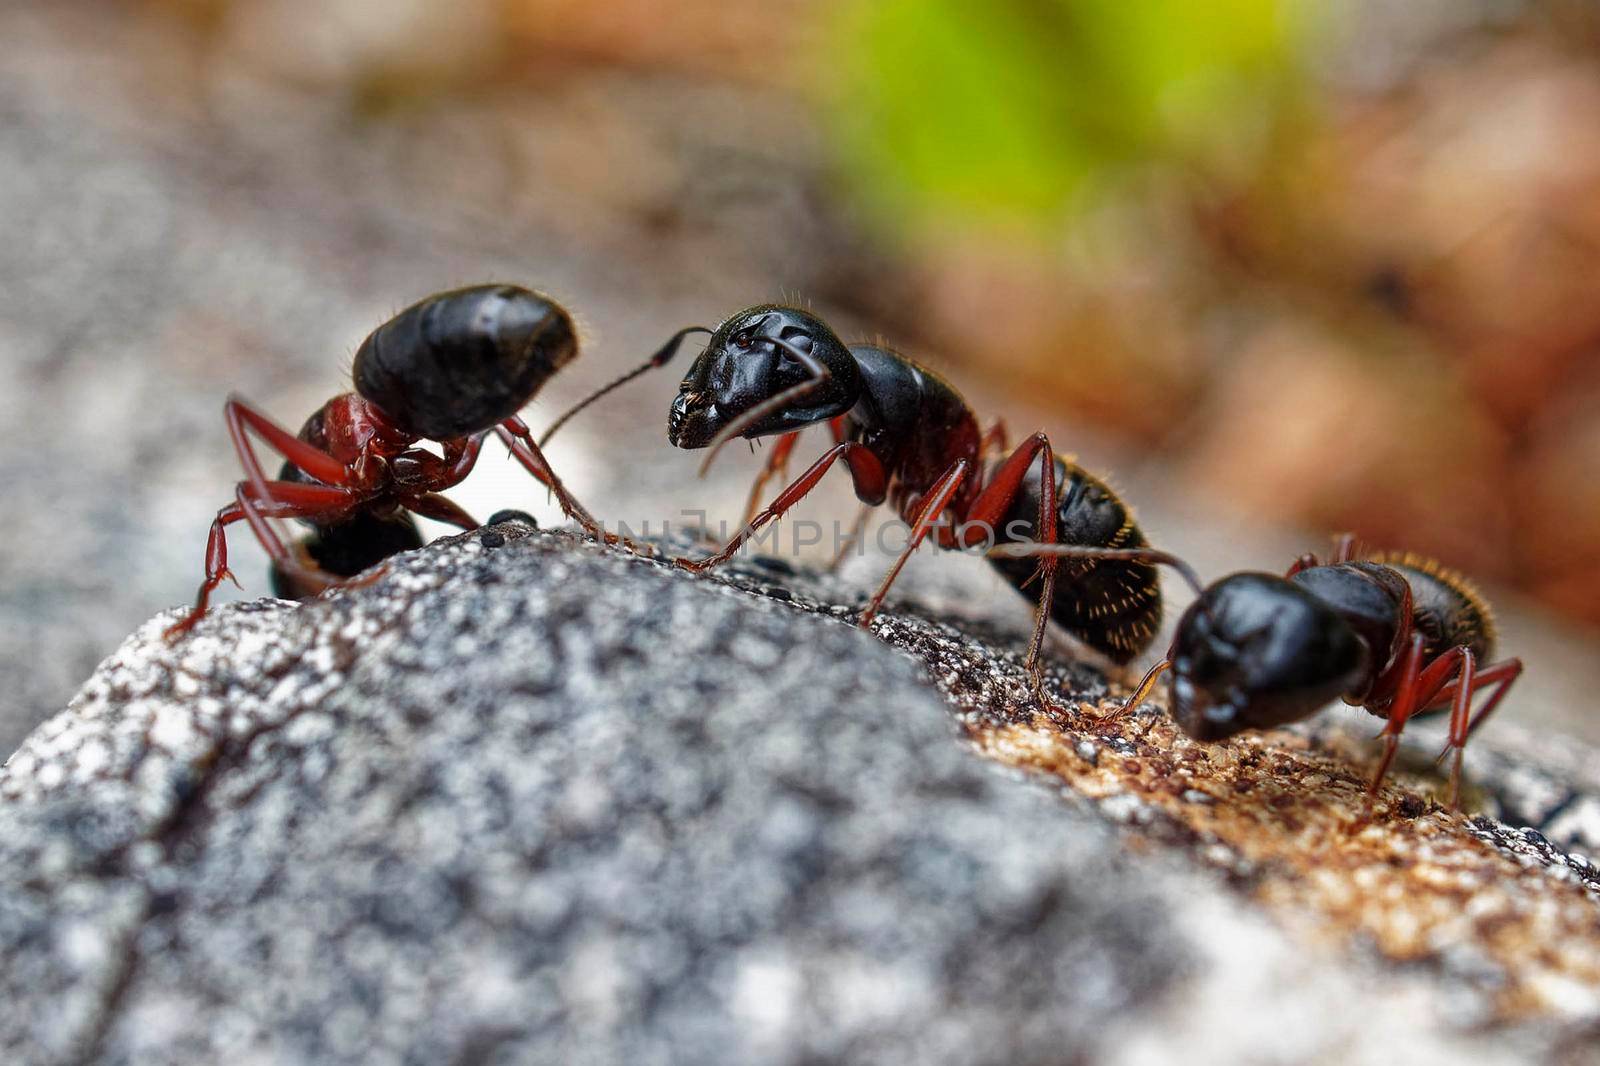 Carpenter Ants by sanisra